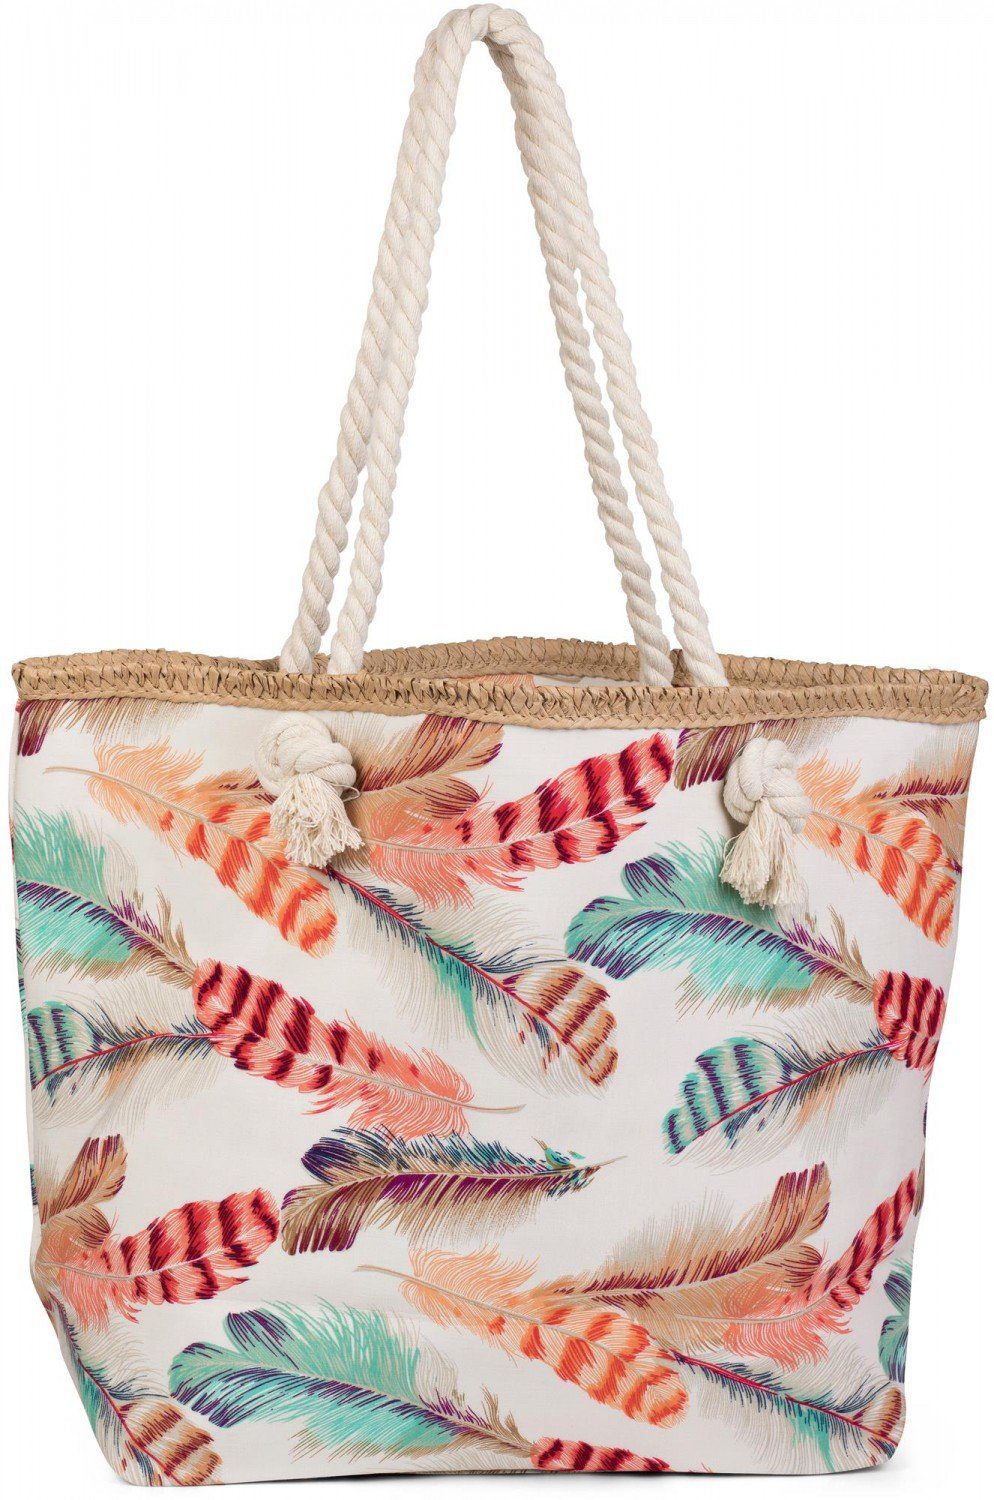 Strandtasche Strandtasche bunten mit styleBREAKER Creme-Beige Federn (1-tlg),